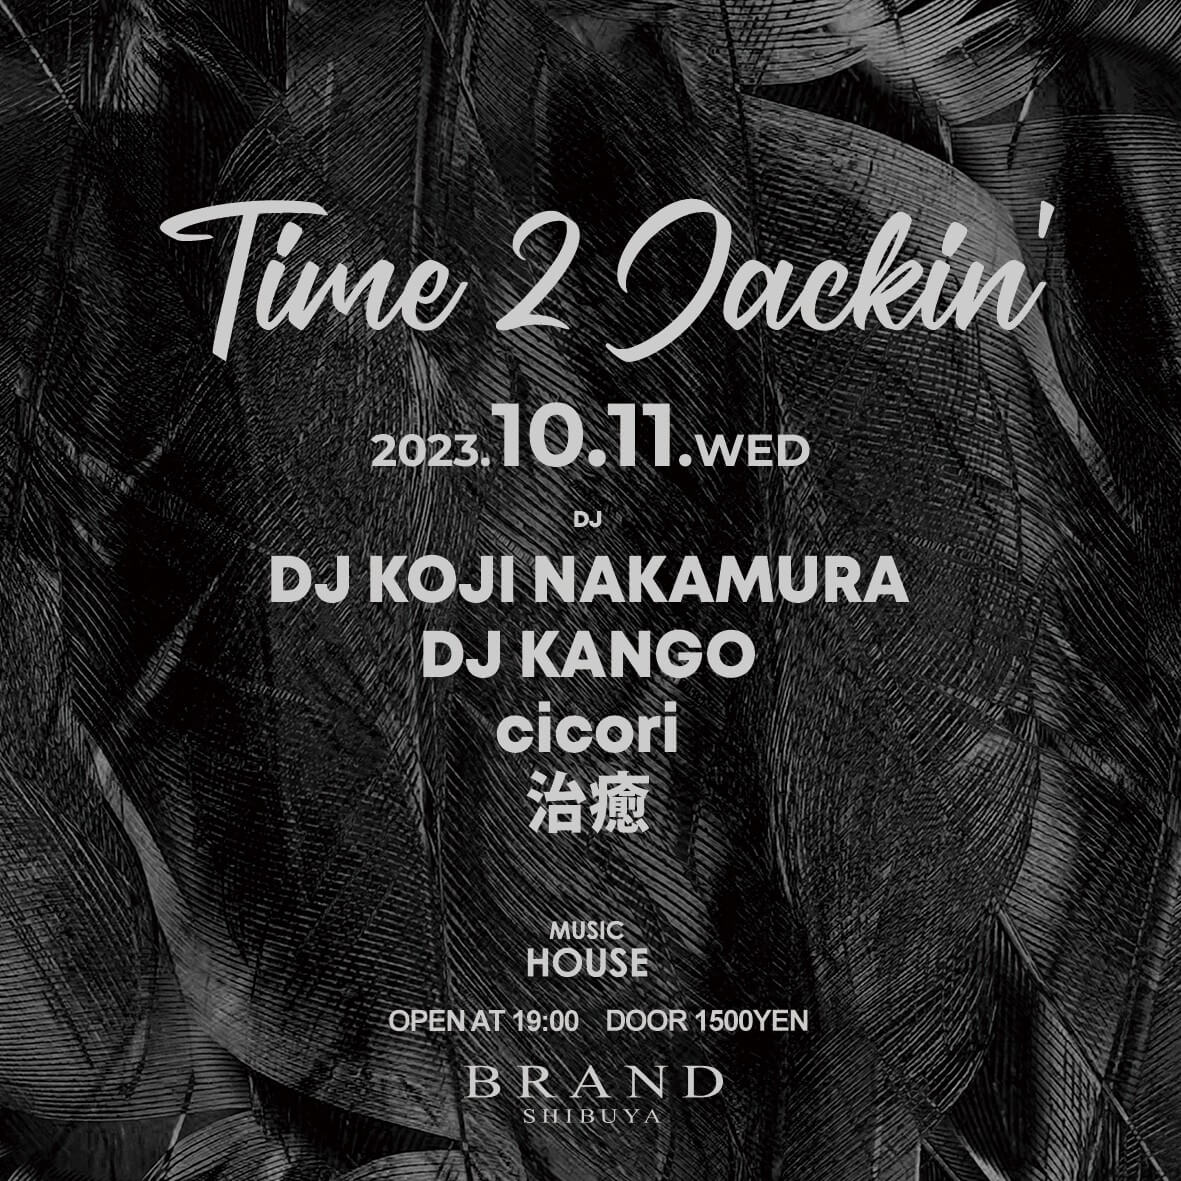 Time 2 Jackin' 2023年10月11日（水曜日）に渋谷 クラブのBRAND SHIBUYAで開催されるHOUSEイベント